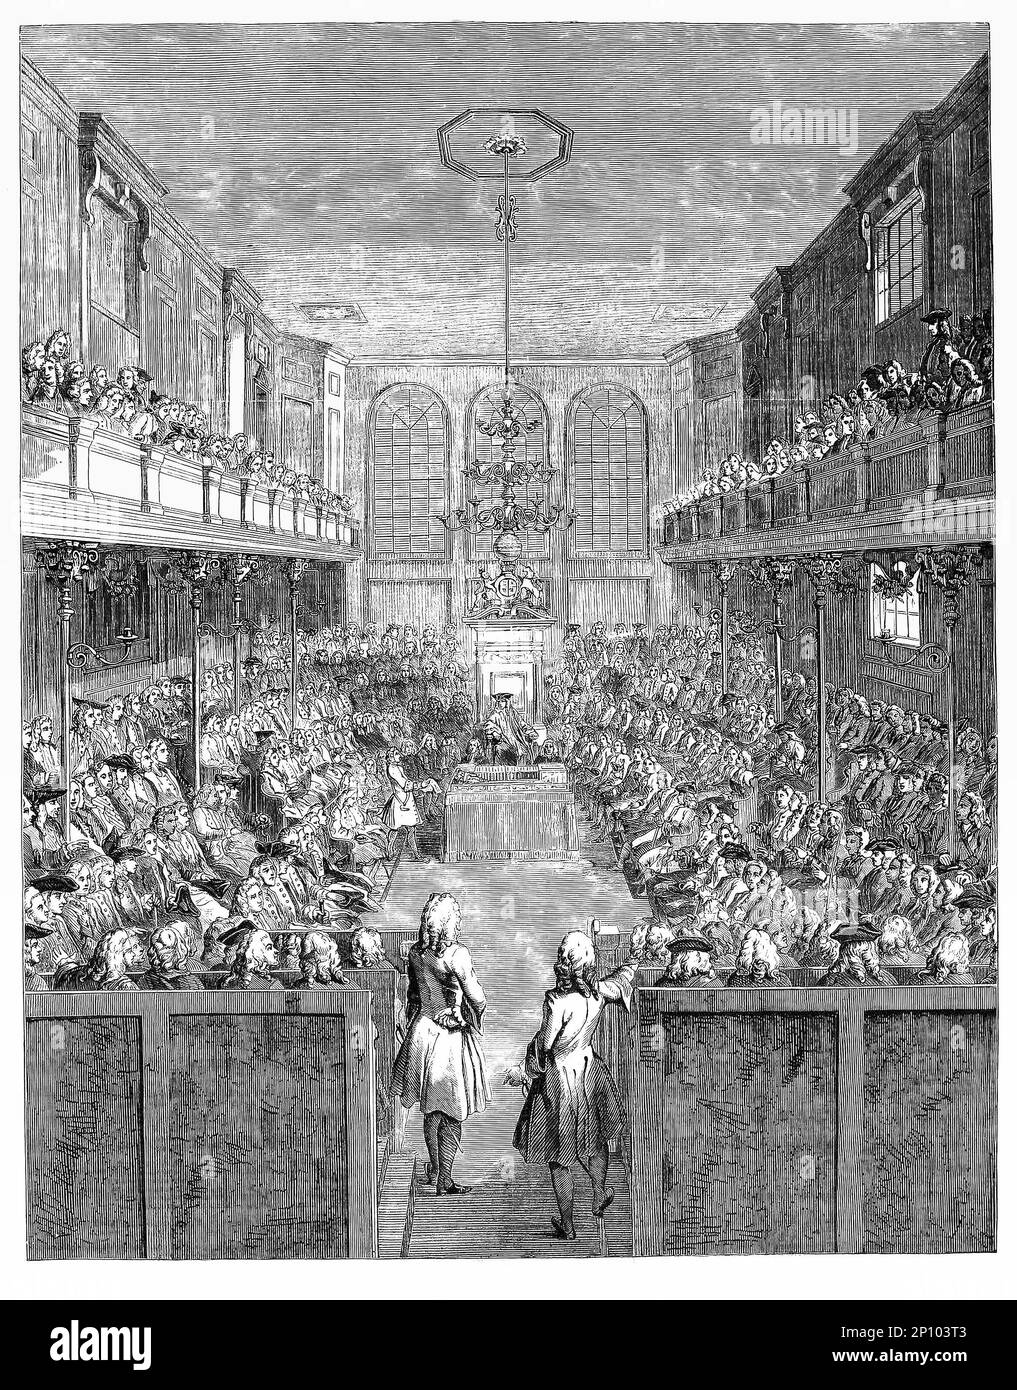 Un croquis de la session de 1741-2 de la Chambre des communes, la chambre basse du Parlement du Royaume-Uni. Comme la Chambre haute, la Chambre des Lords, elle se réunit au Palais de Westminster à Londres, en Angleterre. Banque D'Images